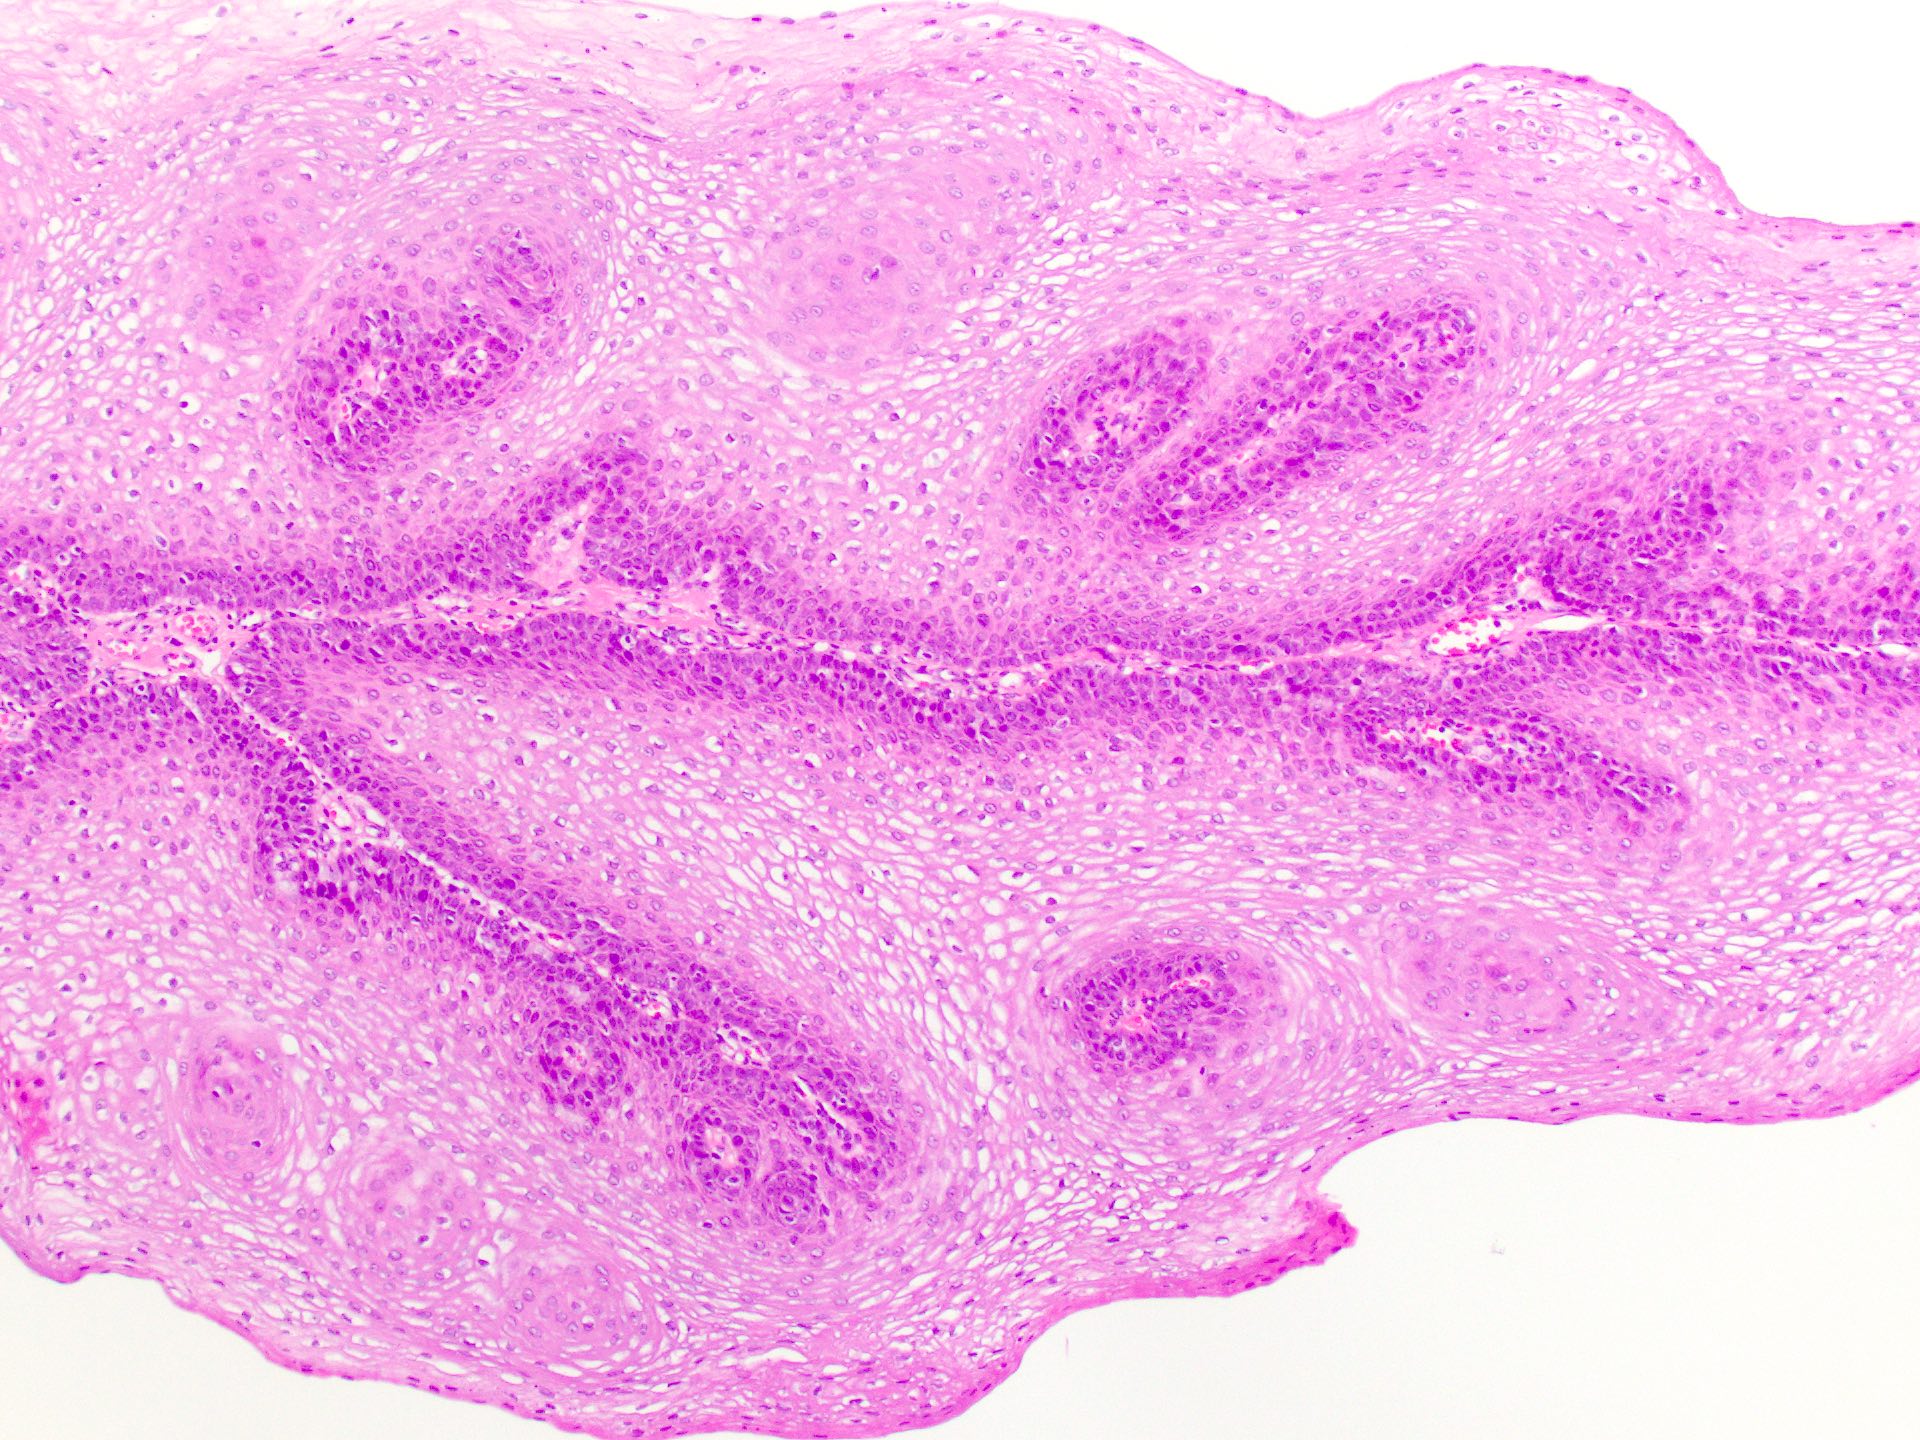 papillomatosis skin pathology outlines)